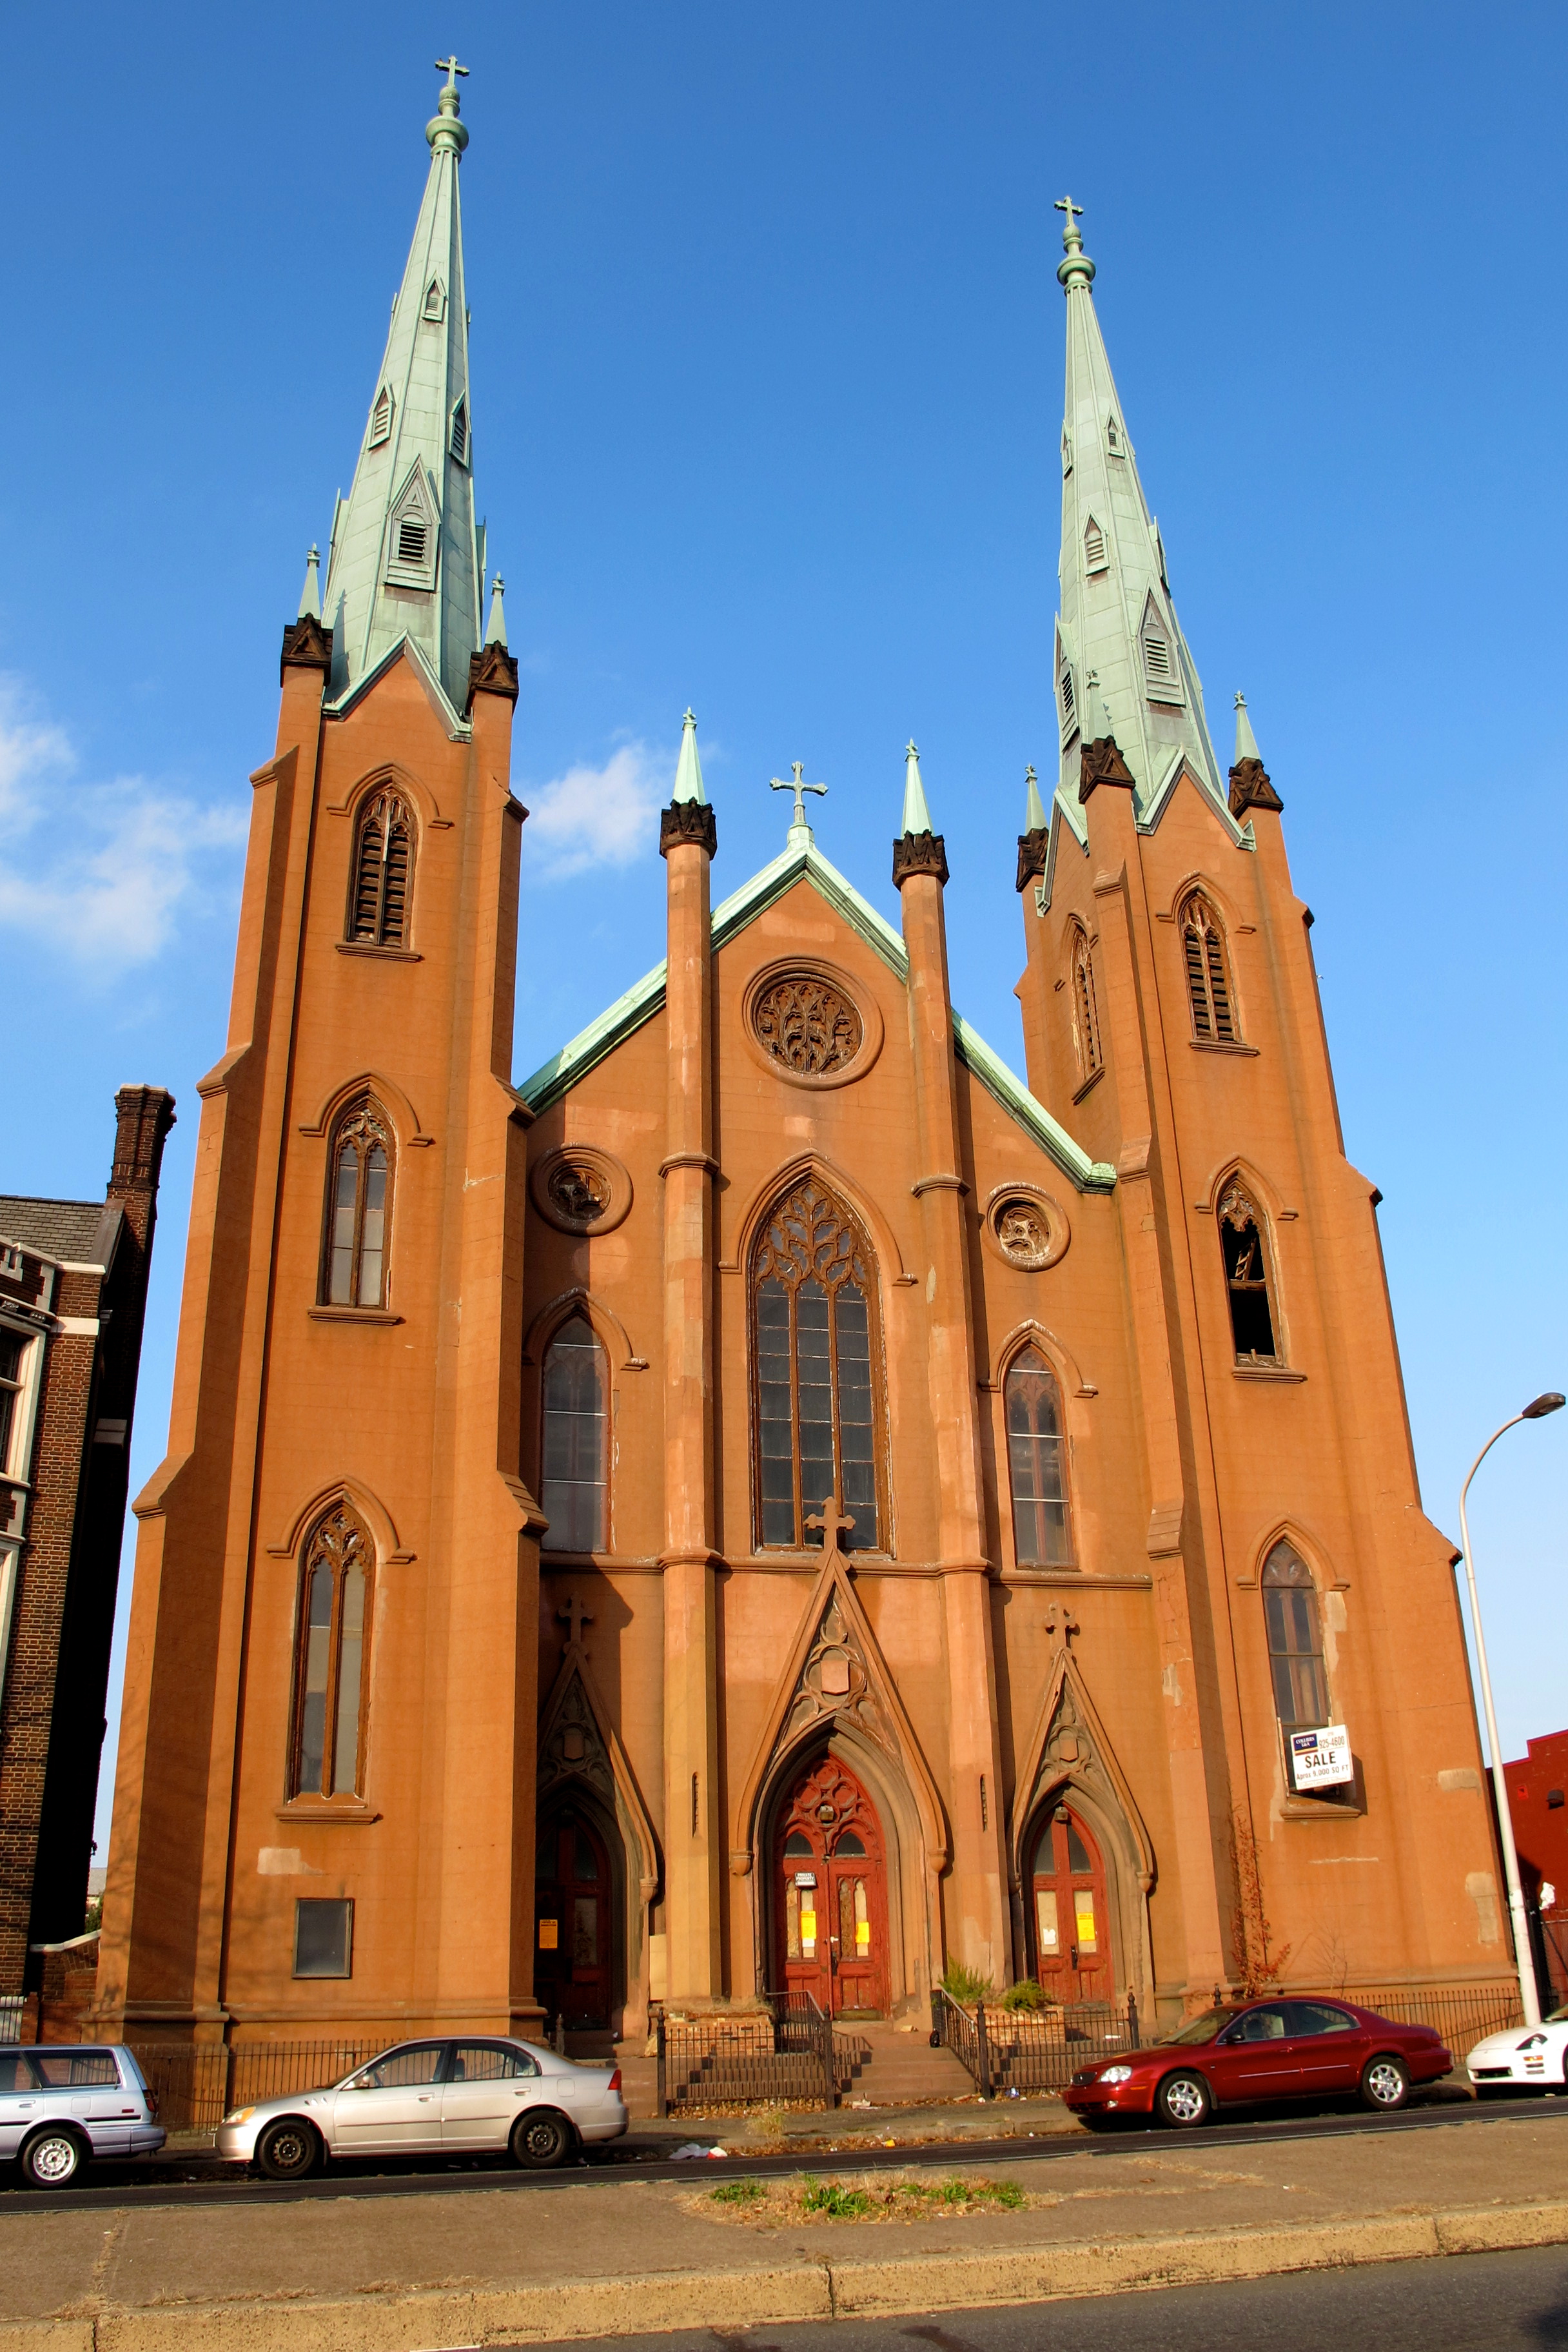 Church of the Assumption, December 2012